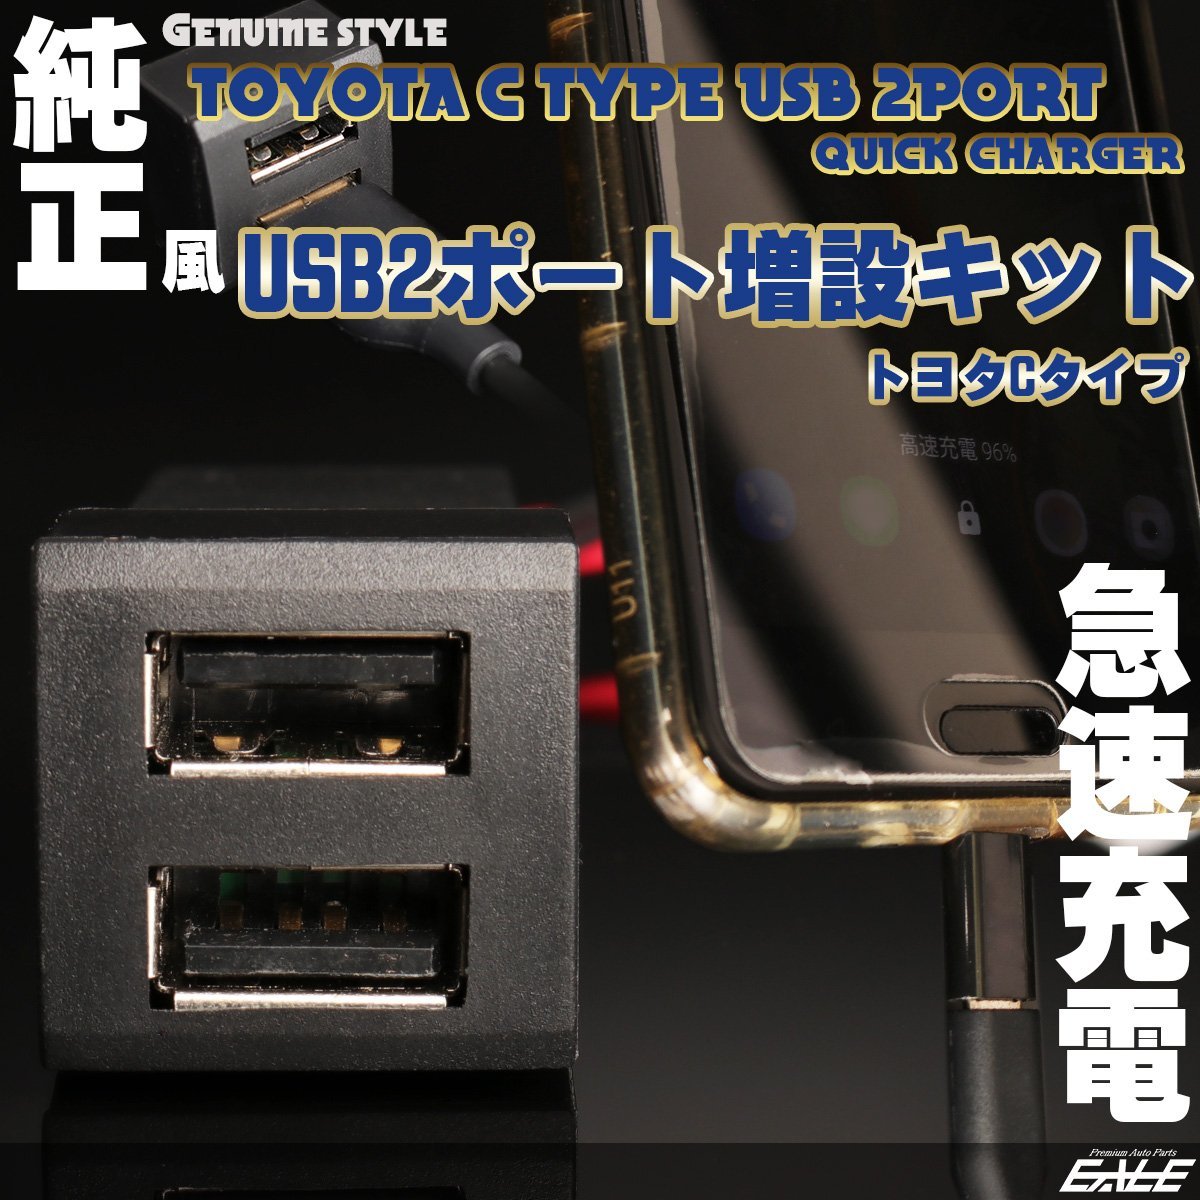 純正風 USBポート 増設キット トヨタ Cタイプ 2ポート 急速充電 スイッチホール ハスラー MR52S アルト HA37S ソリオ MA27S I-319_画像1